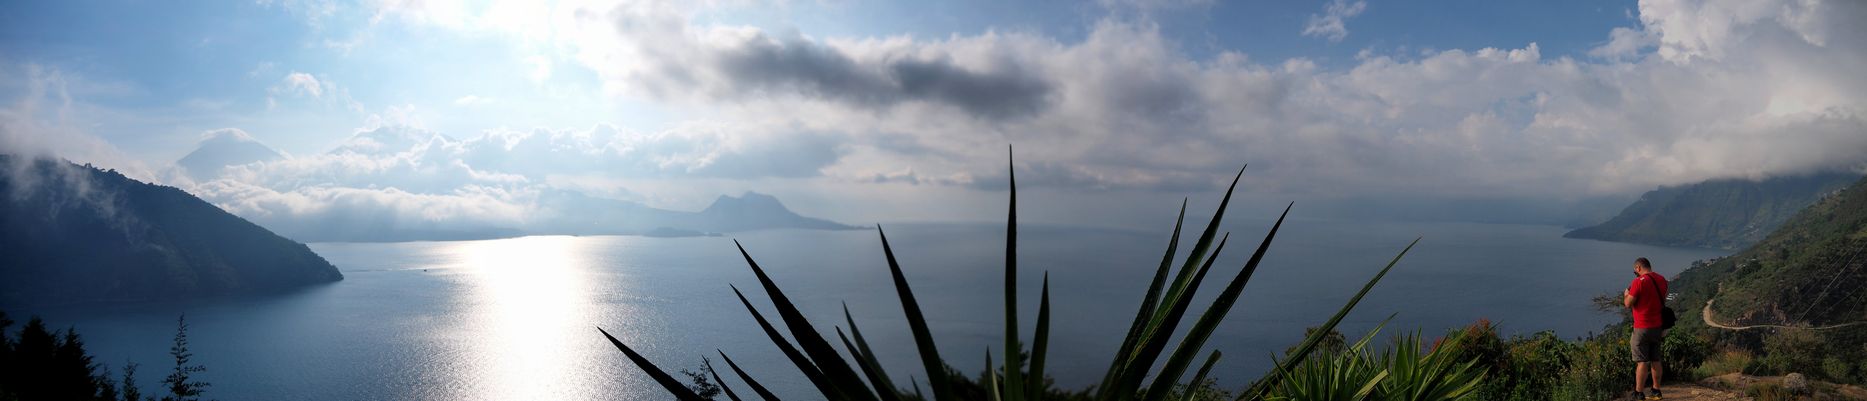 Le lac Atitlán